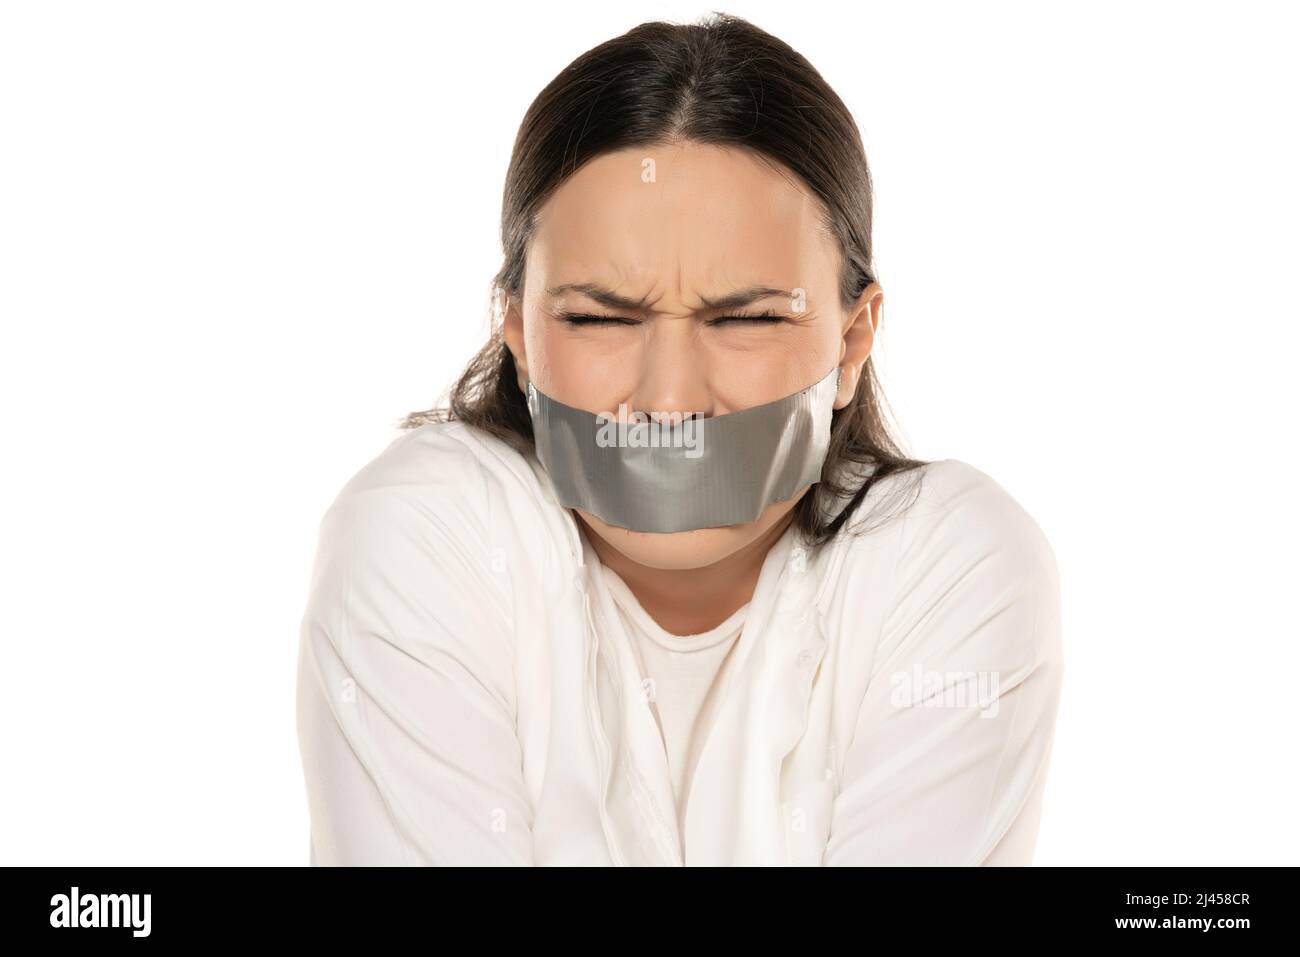 Unglückliche und verzweifelte junge Frau mit Klebeband über ihrem Mund Stockfoto